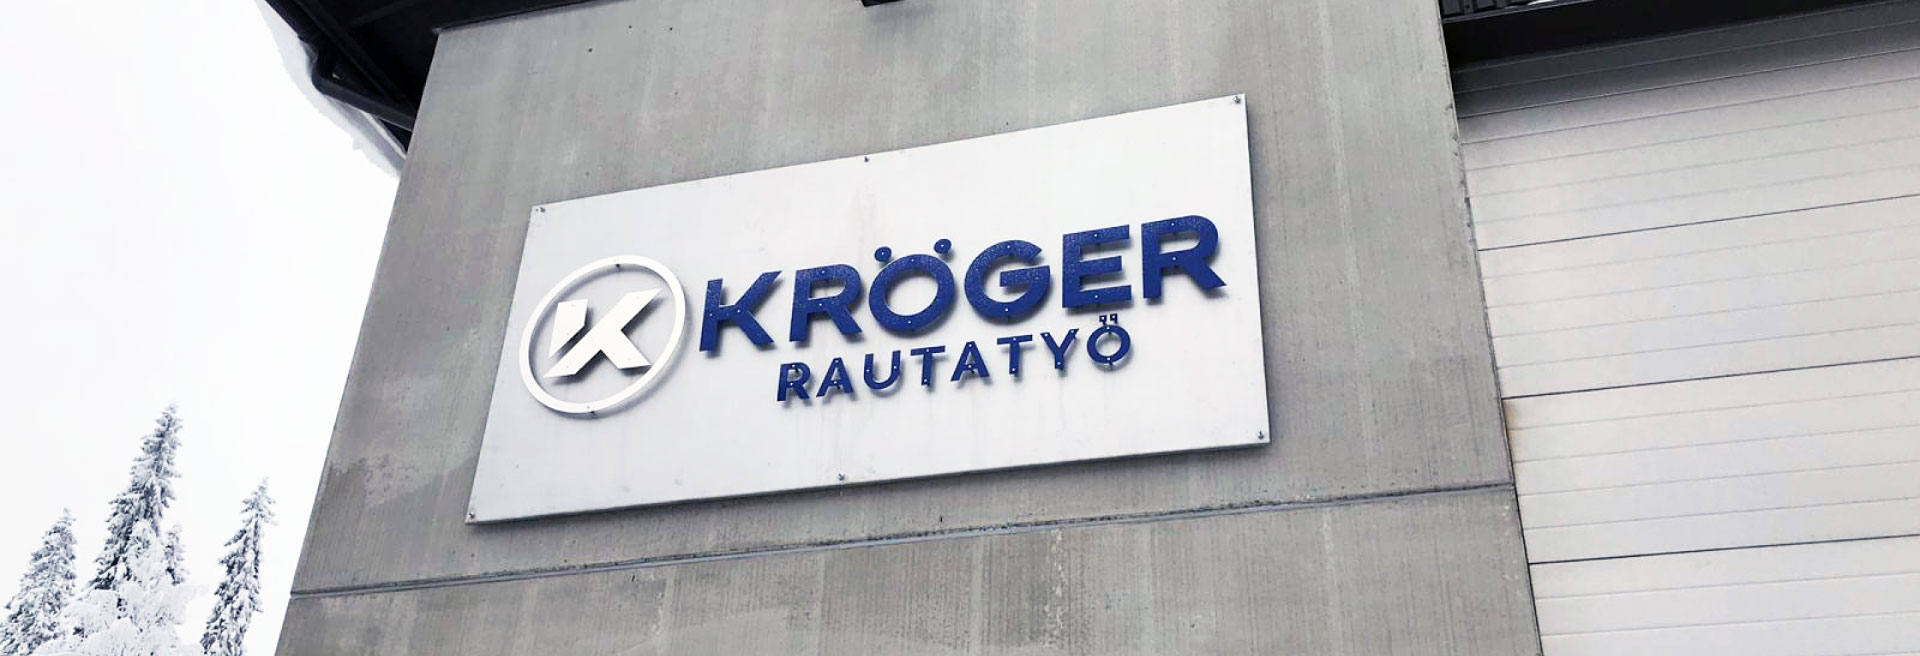 Rautatyö Kröger Yritysilme Logo Värimaailma Typografia Grano